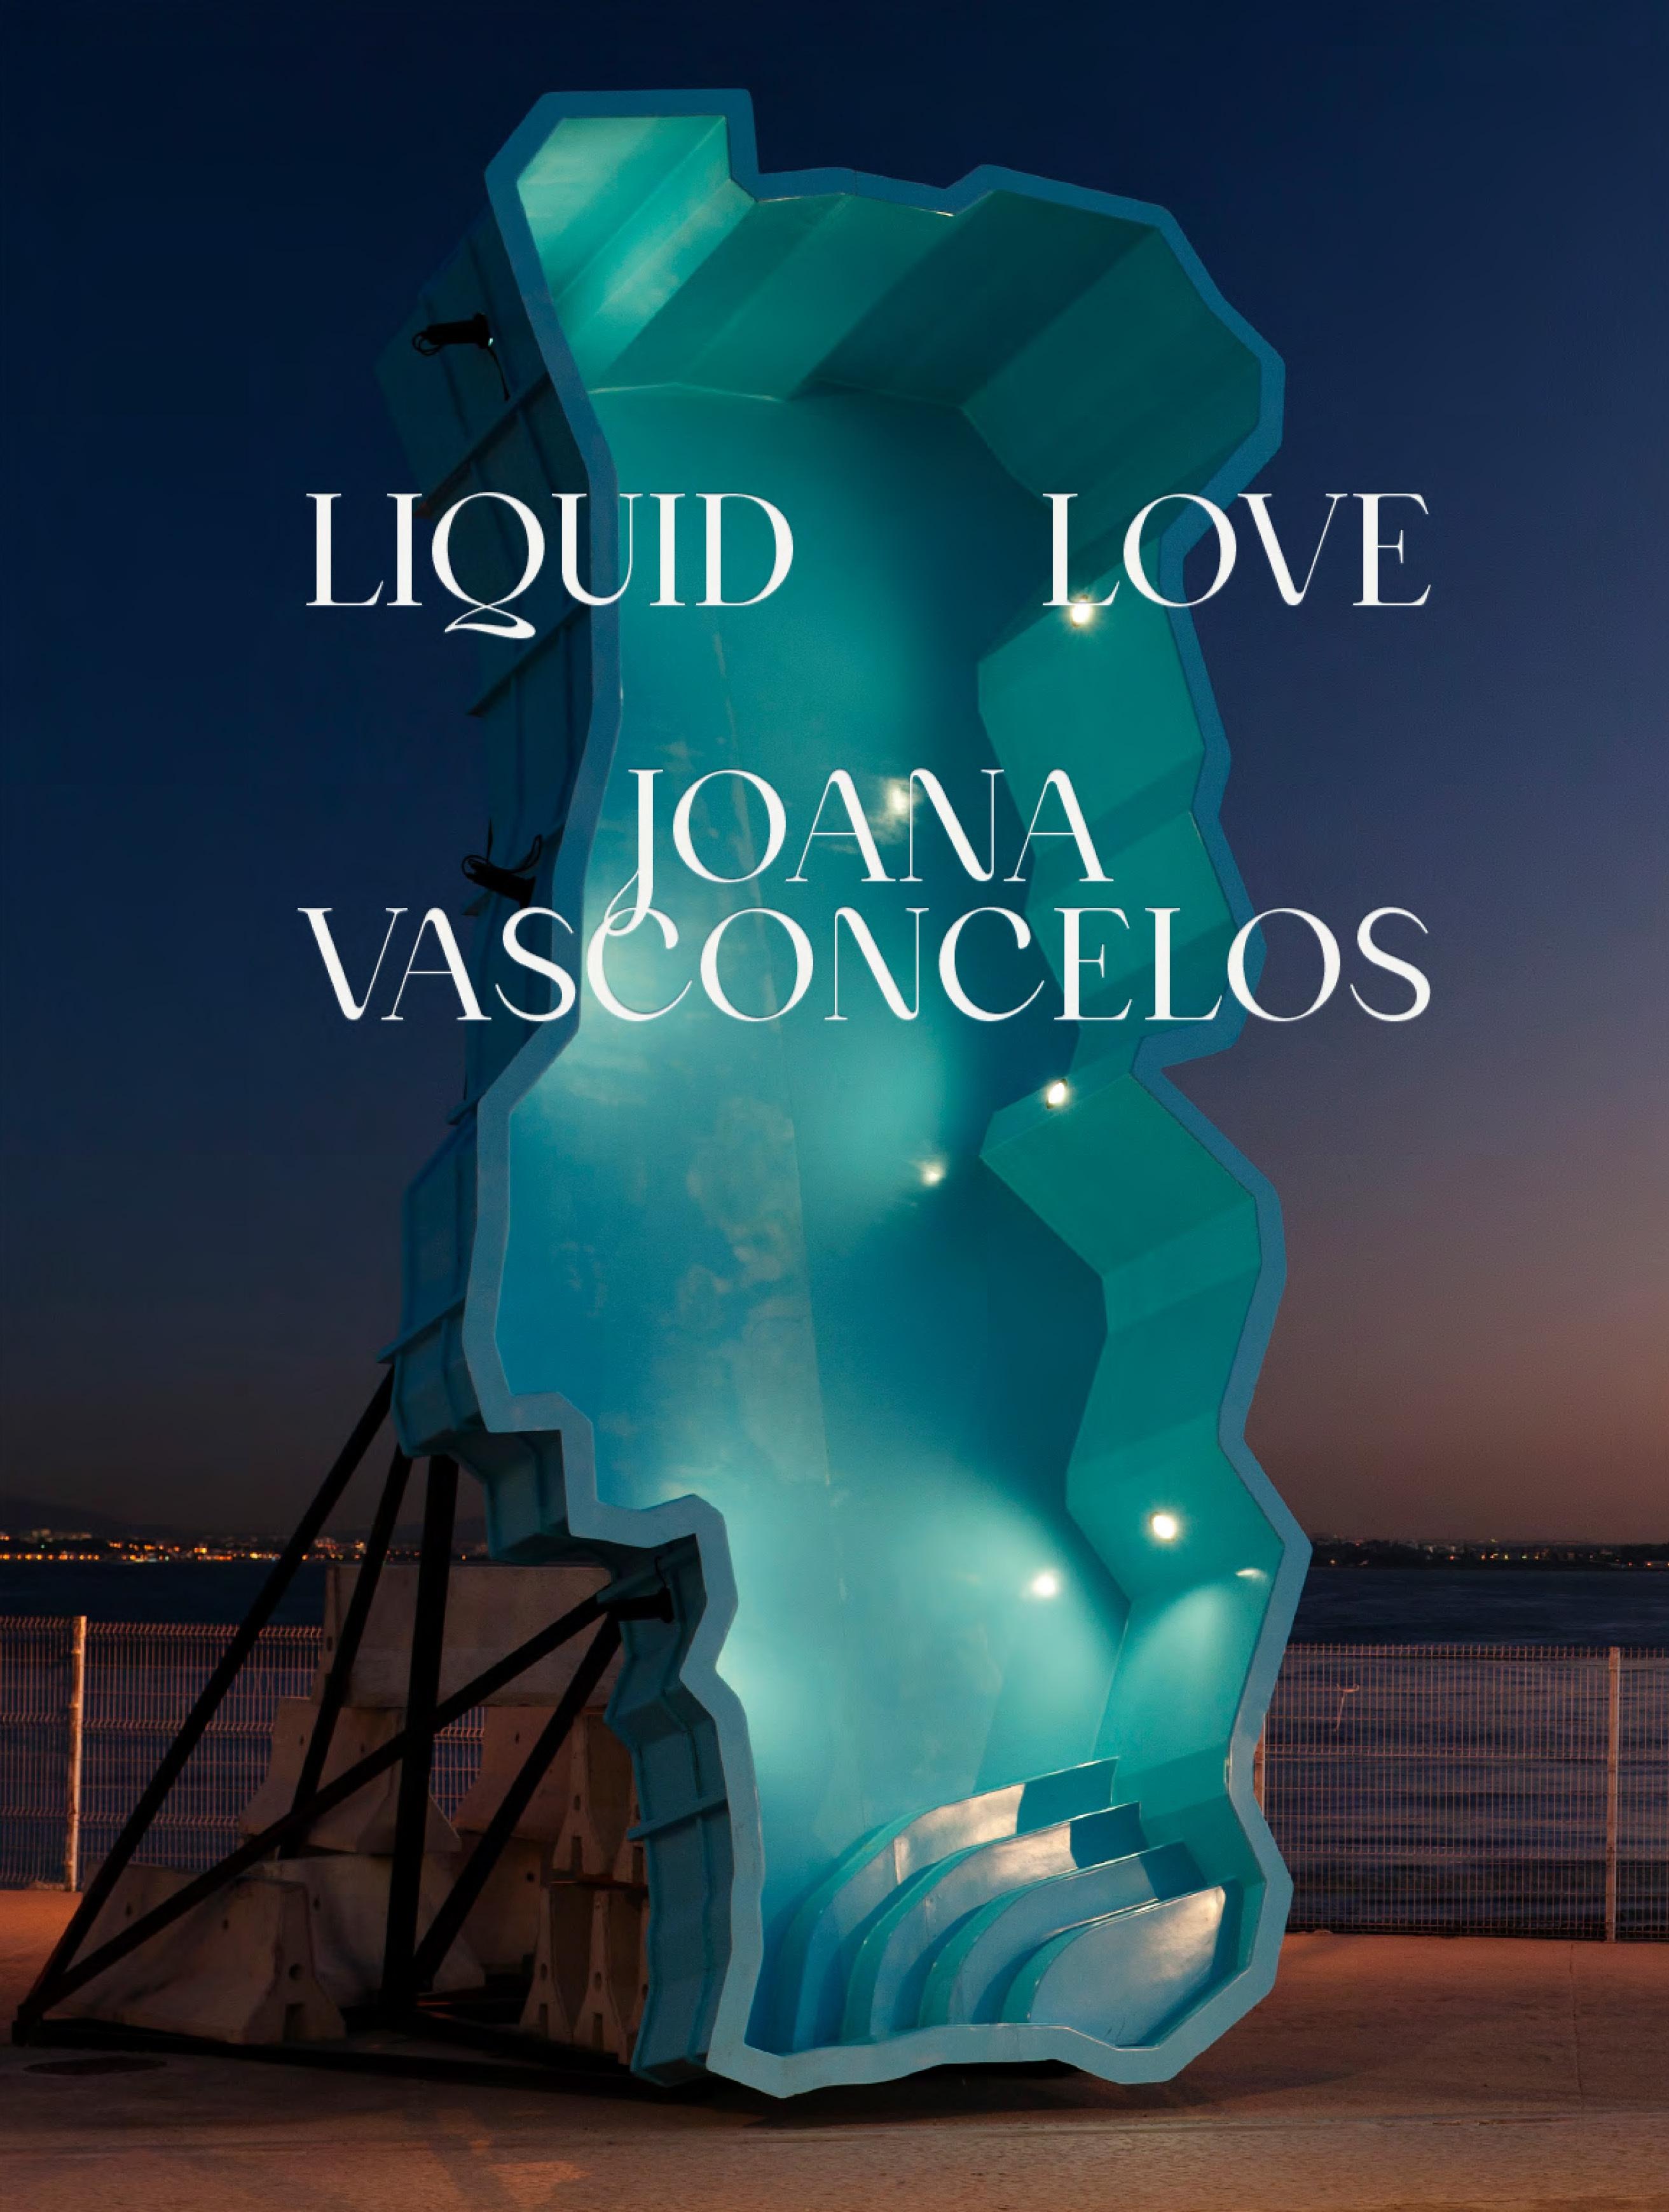 LIQUID LOVE "JOANA VASCONCELOS"